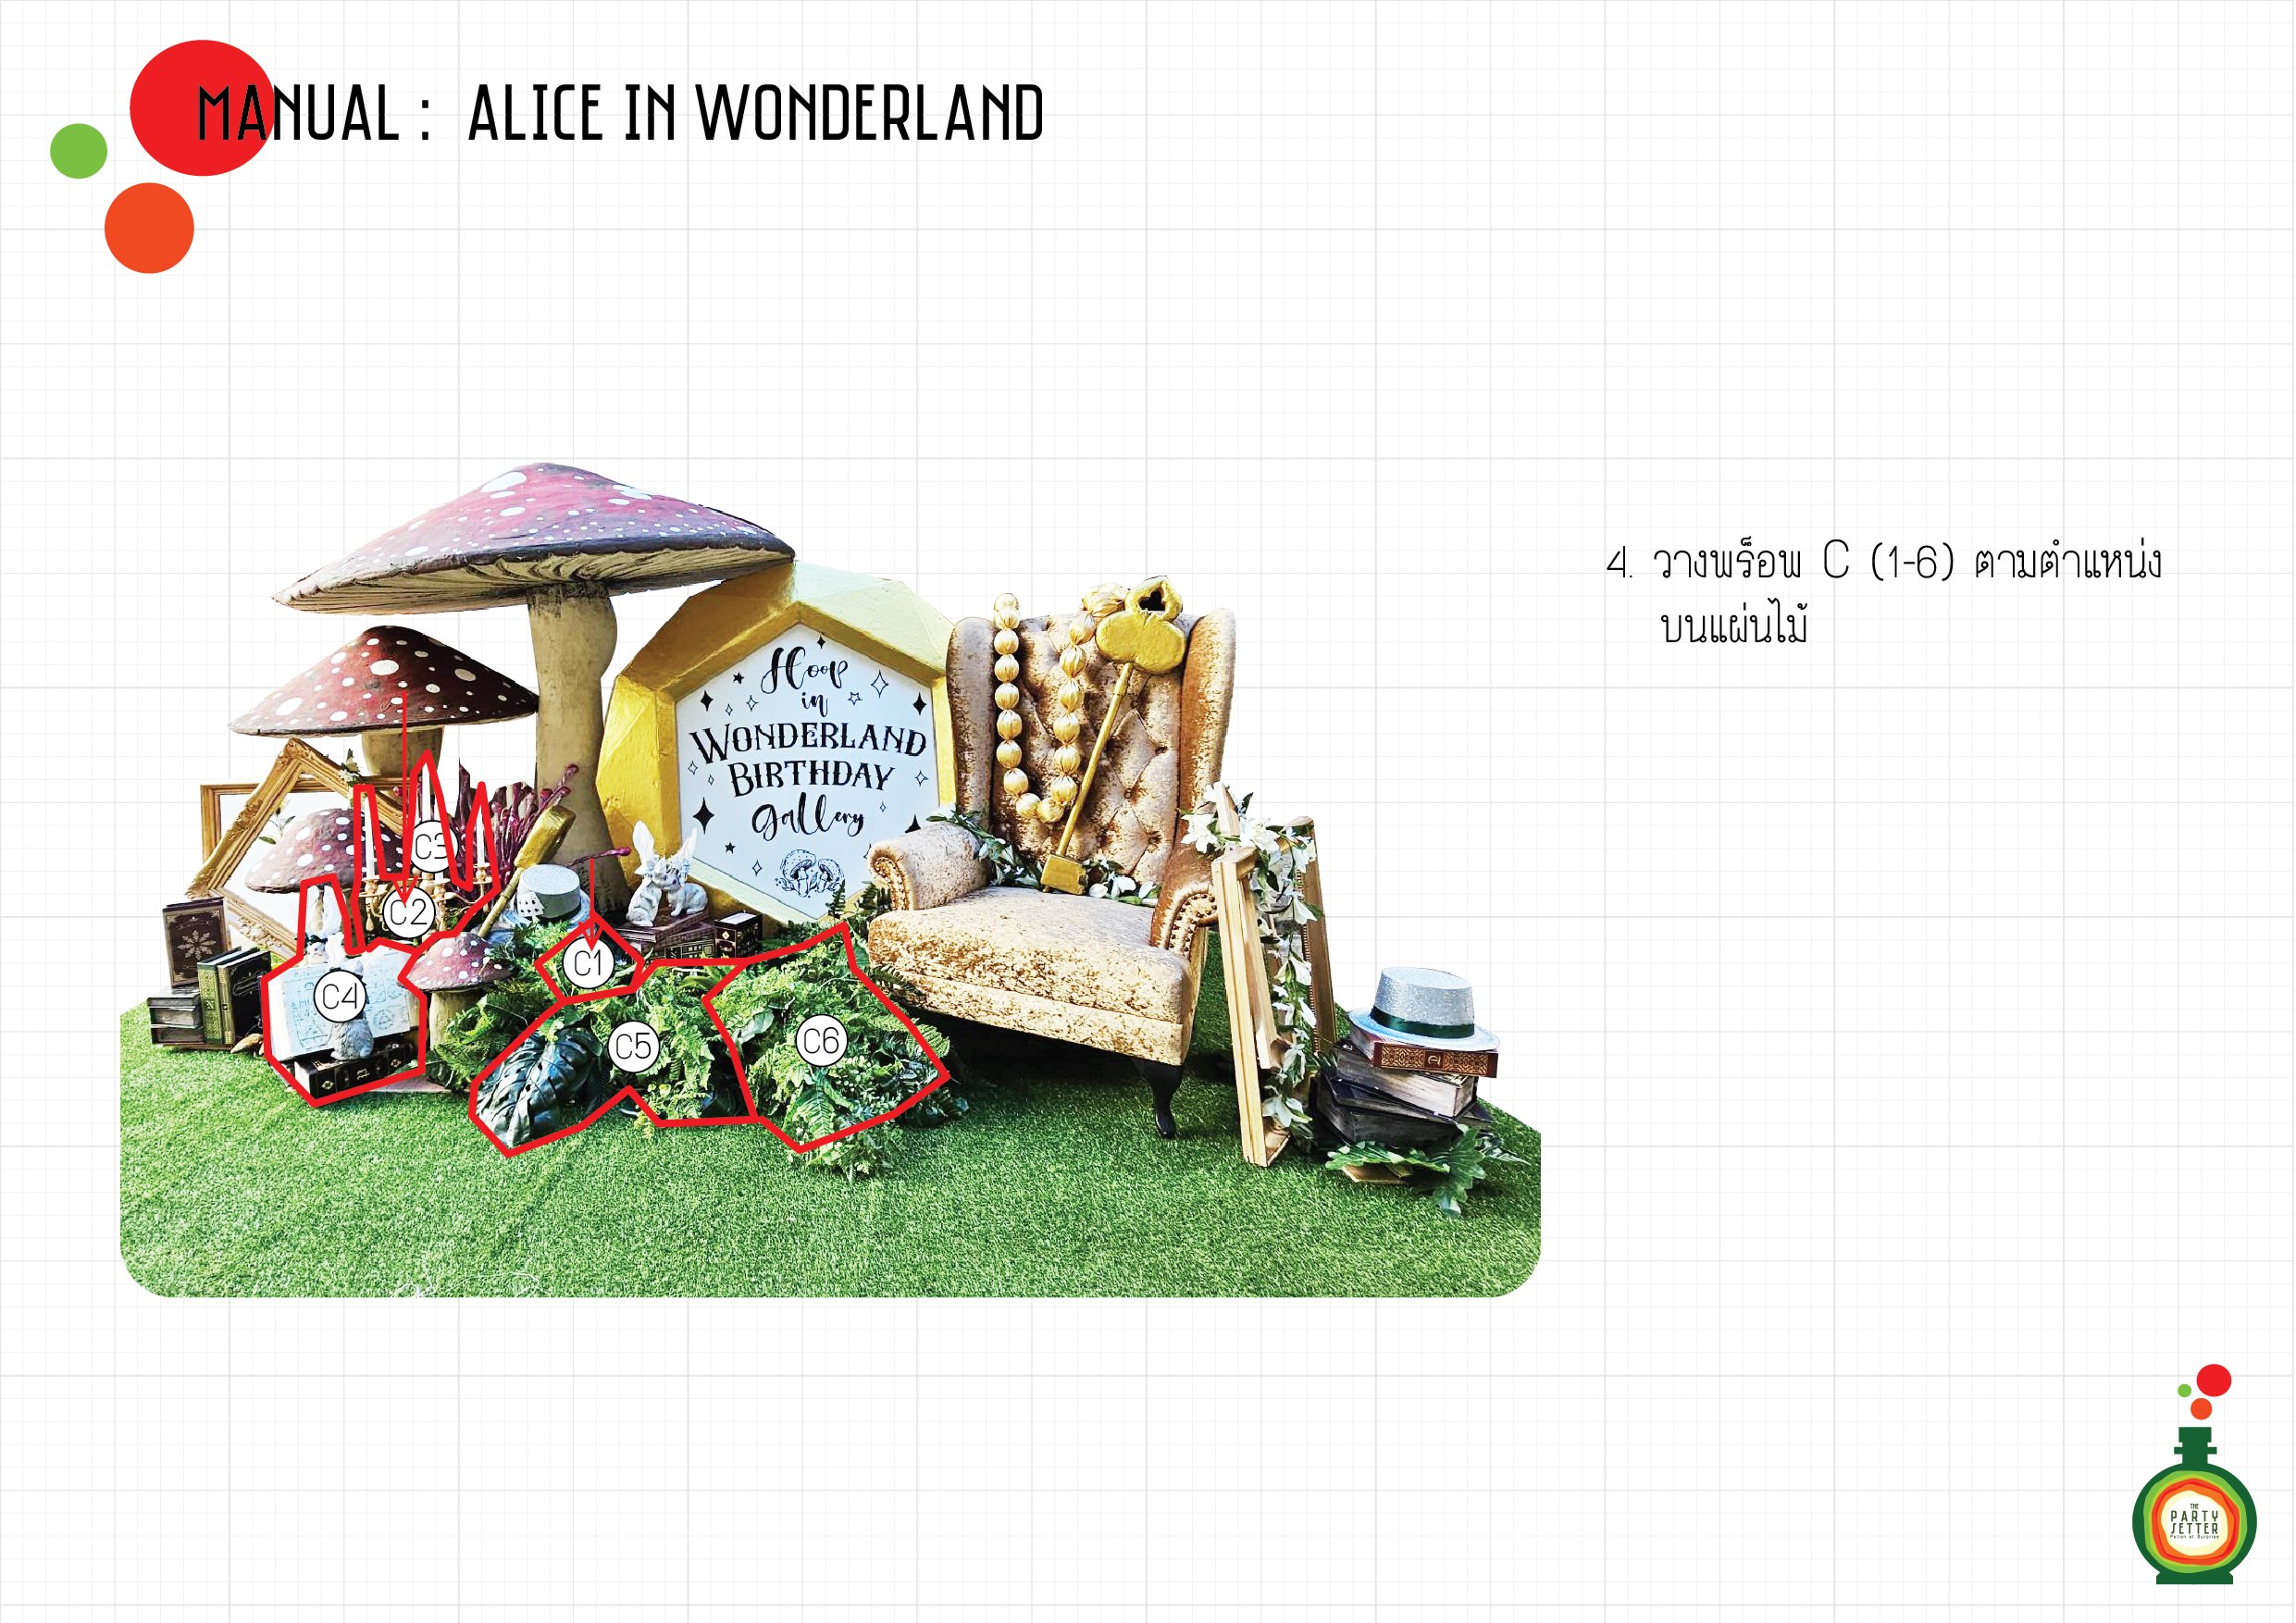 Manual_Alice in Wonderland_04-01.jpg